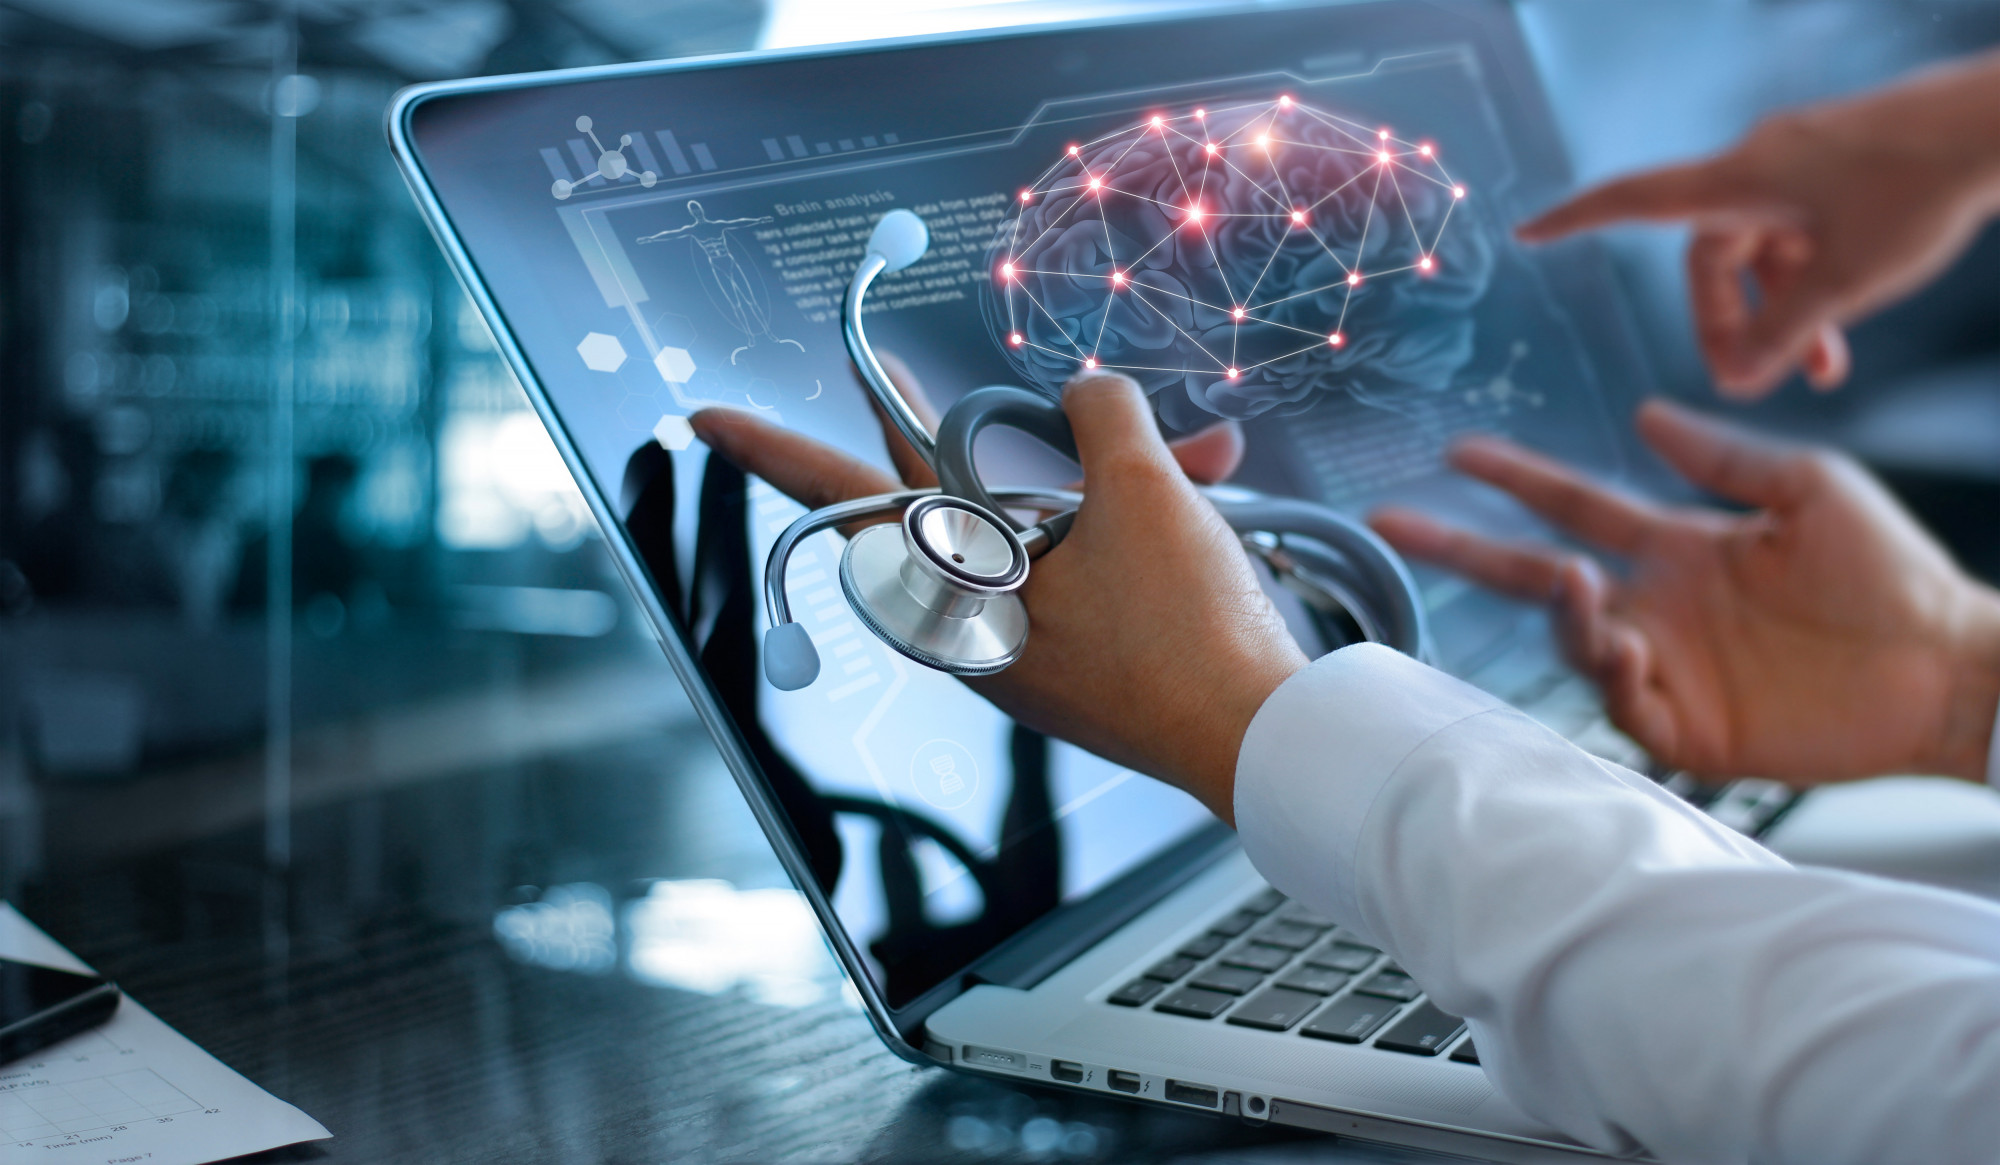 Az egészségügyi szakemberhiányra hatásos válasz lehet a digitalizáció